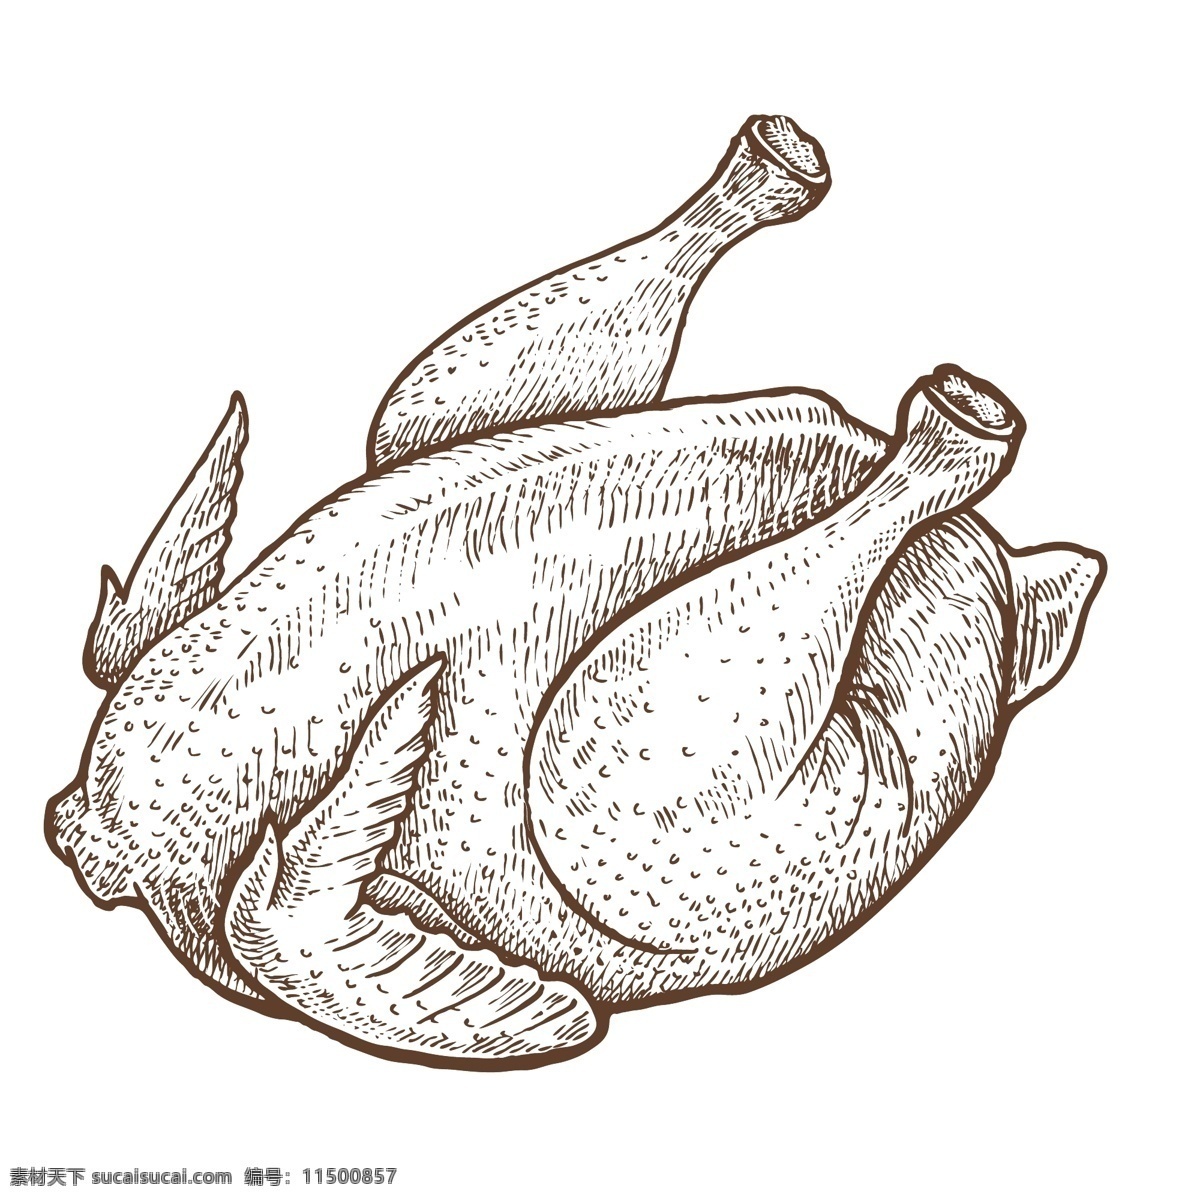 餐饮 食物 插画 元素 蔬菜 鸡肉 鸡腿 复古插画 简笔插画 线条插画 餐饮插画元素 肉类插画 动漫动画